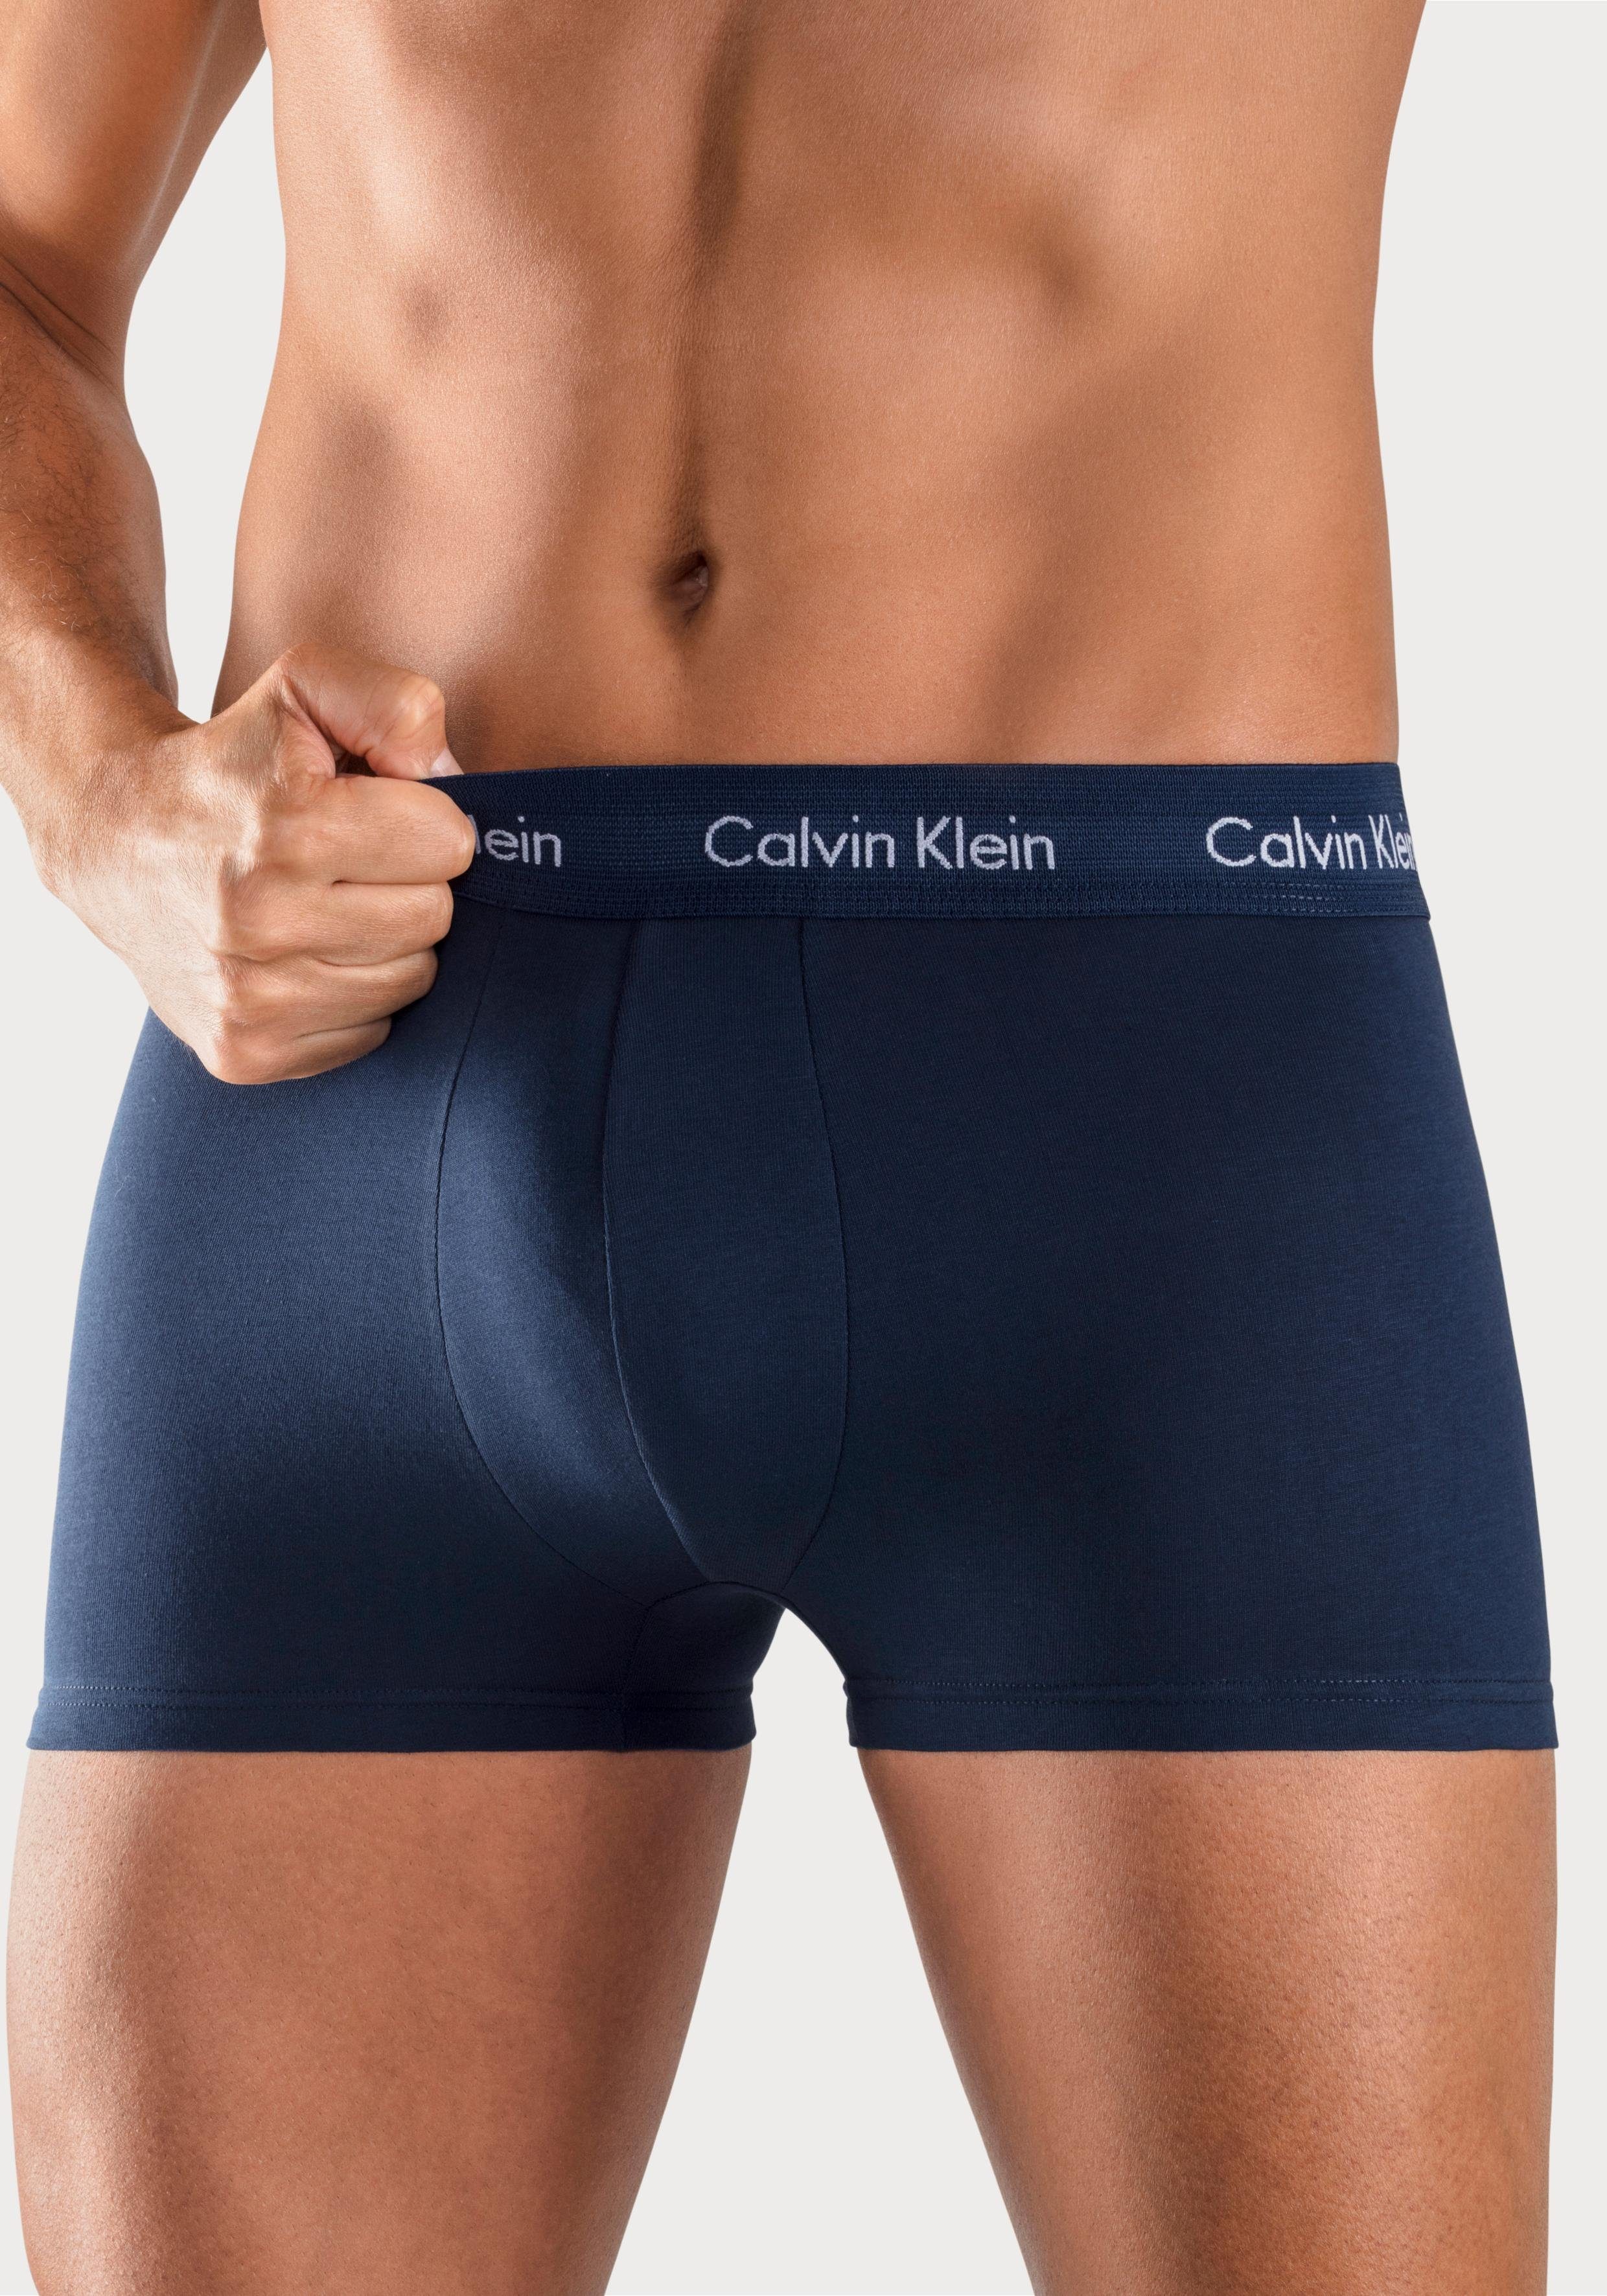 Vader Kaarsen Herformuleren Calvin Klein Boxershort in blauwtinten (3 stuks) online verkrijgbaar |  LASCANA